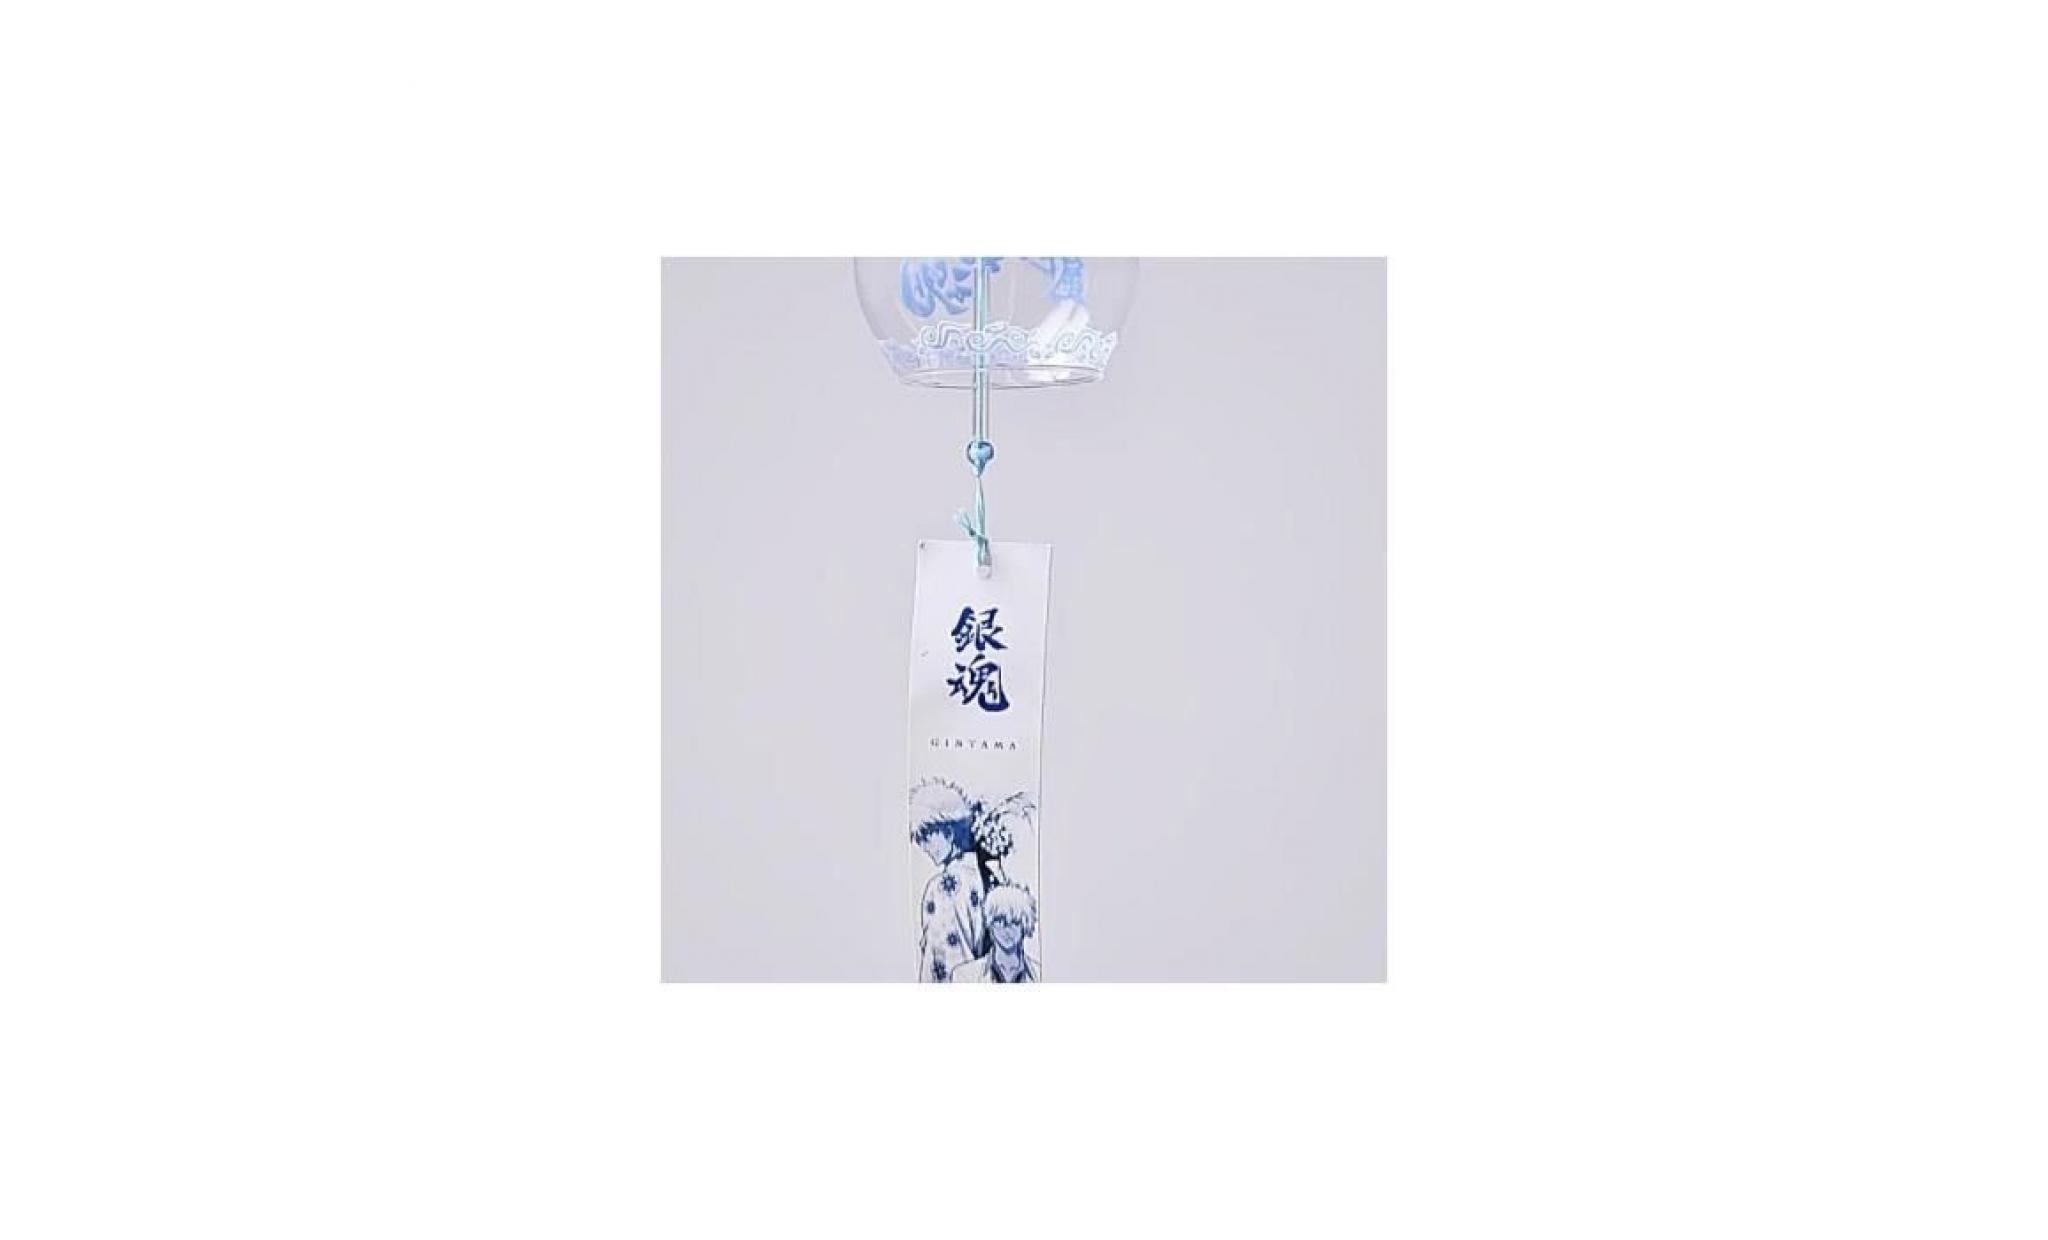 carillon brise en verre carillon de style japenese maison jardin suspendu décoration cadeau bricolage # 2 pas cher